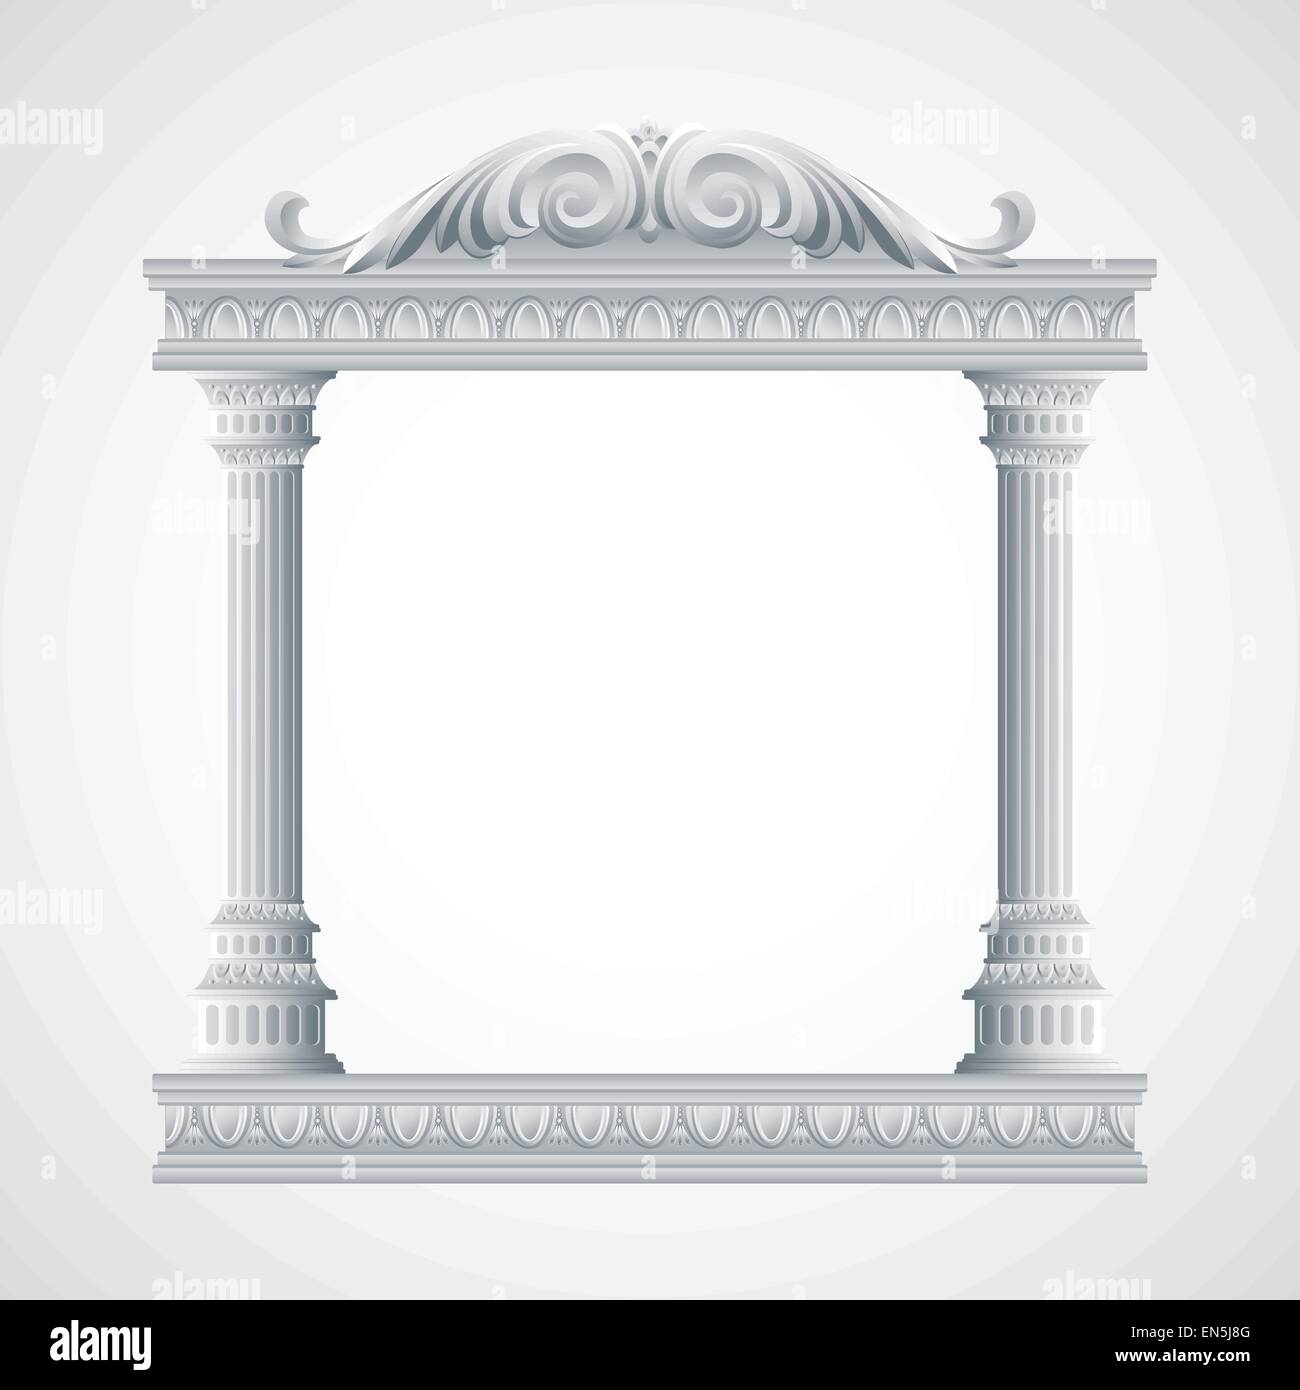 Portikus eines antiken Tempels. Kolonnade.  Vektor-Illustration EPS 10 Stock Vektor